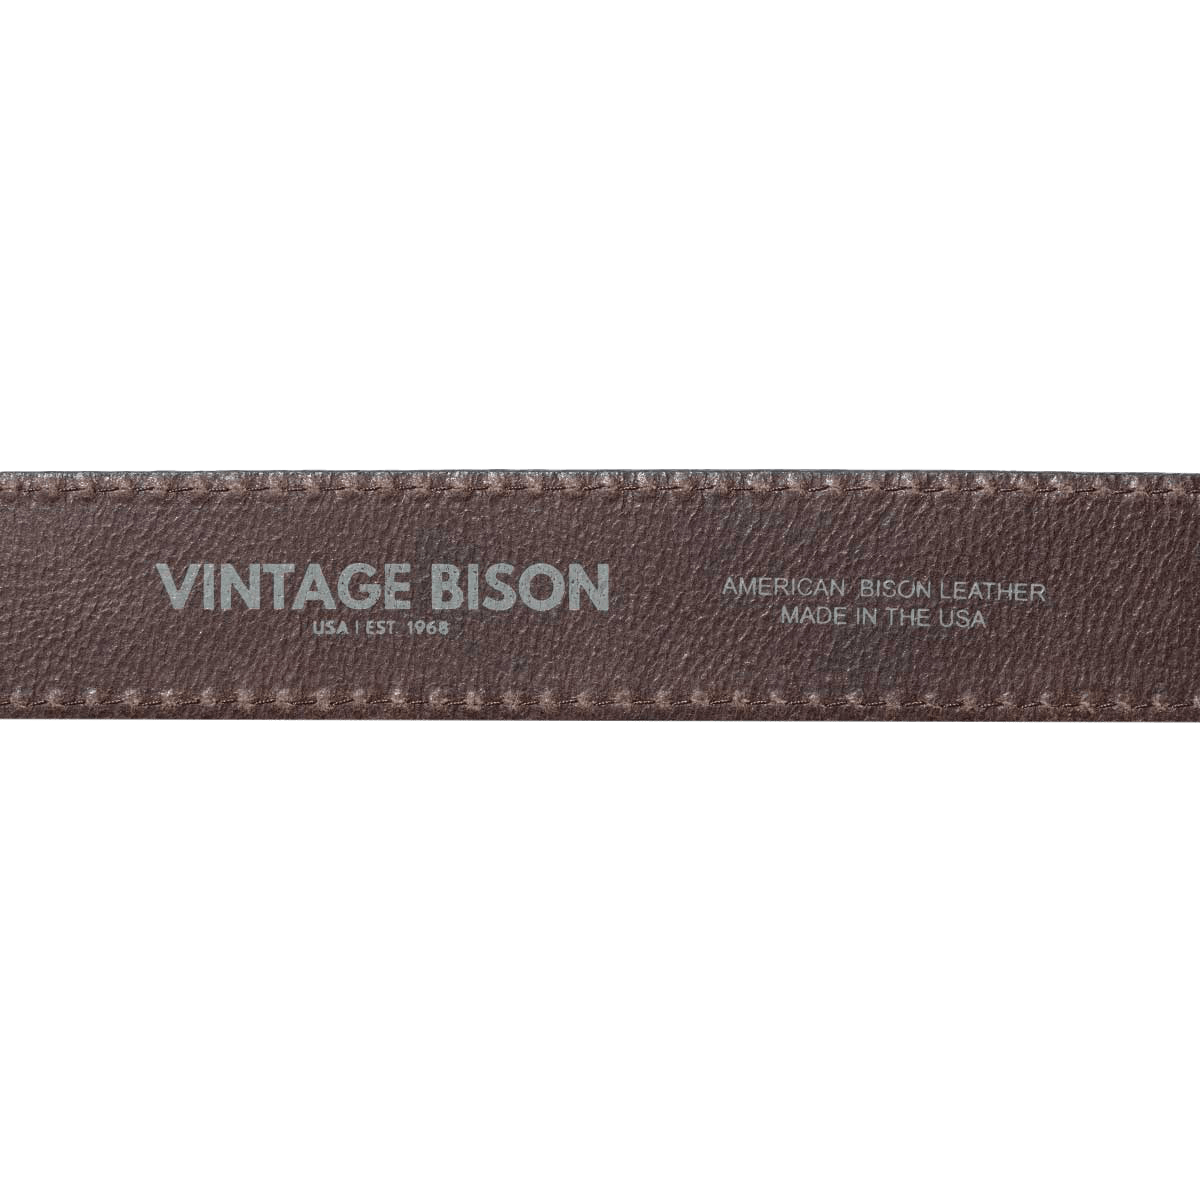 NOMAD Vintage Bison USA